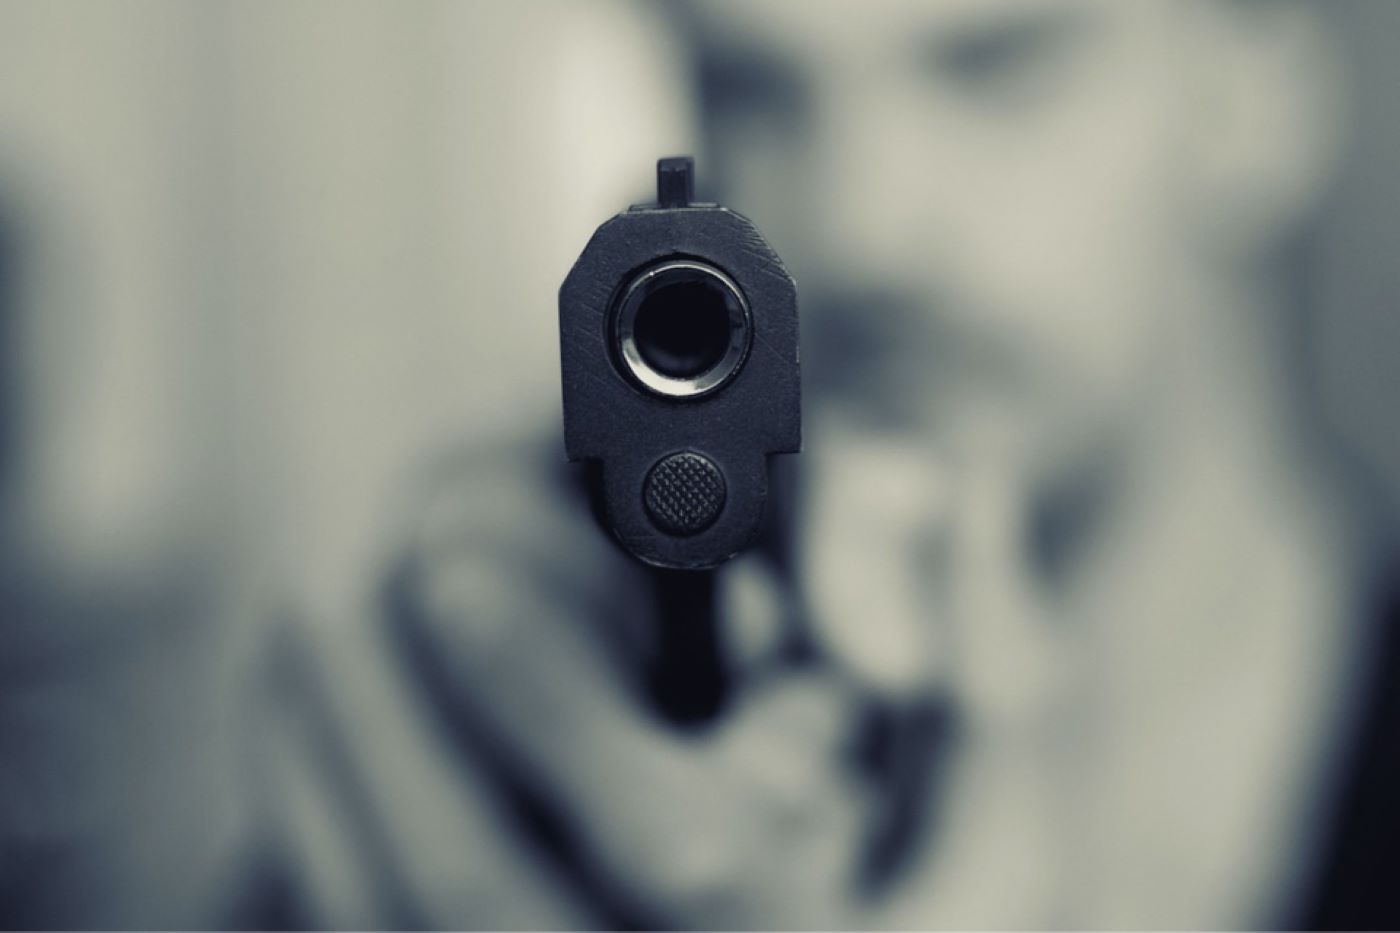 L’individu encagoulé et ganté est entré dans le magasin arme à la main - Illustration @ Pixabay